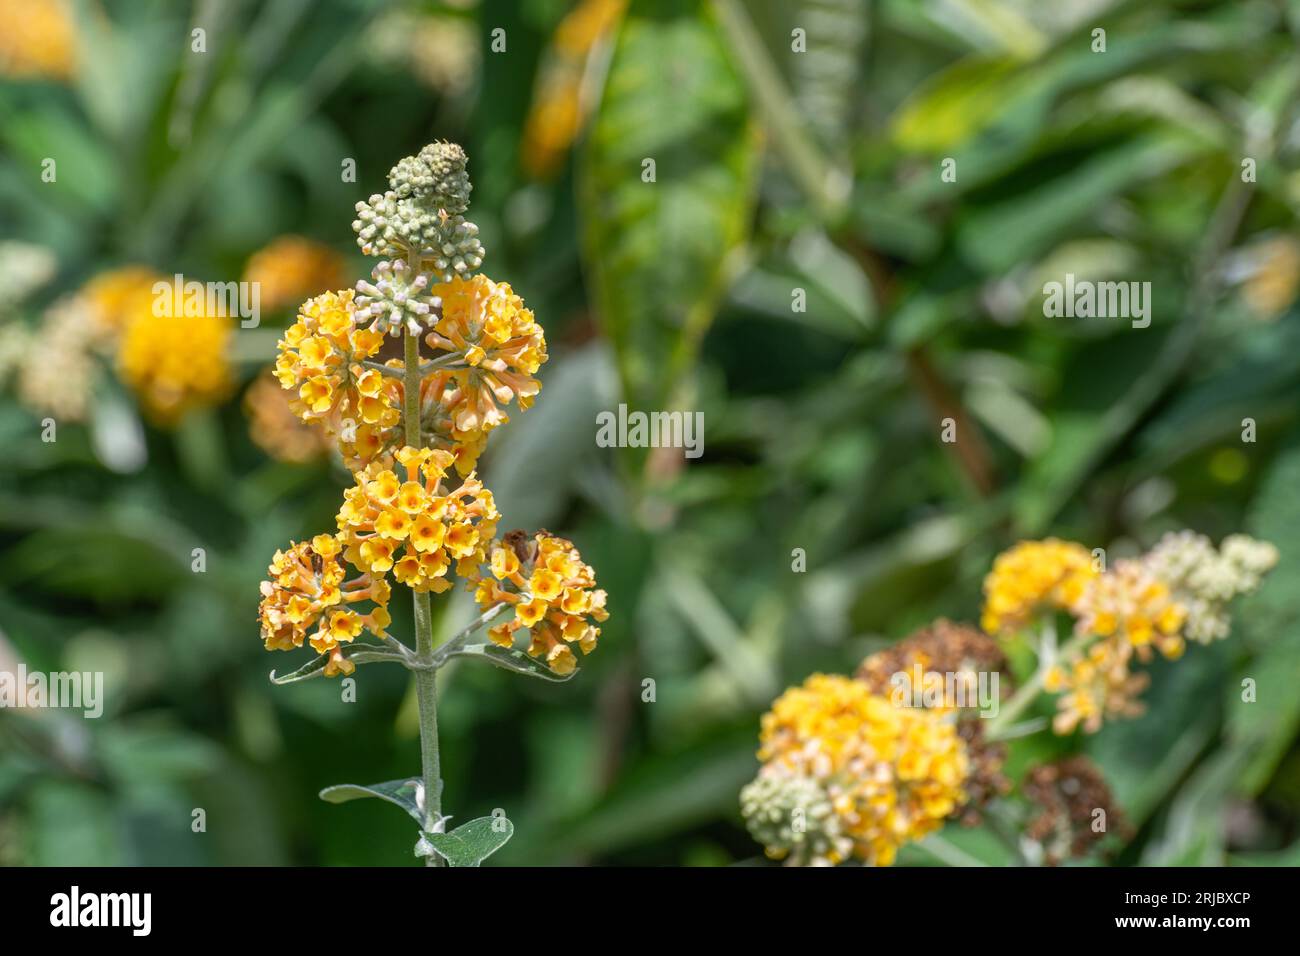 Buddleja x weyeriana ‘Sungold’ (buddleia hybrid variety) with yellow-orange flowers, flowering shrub during summer or august, England, UK Stock Photo